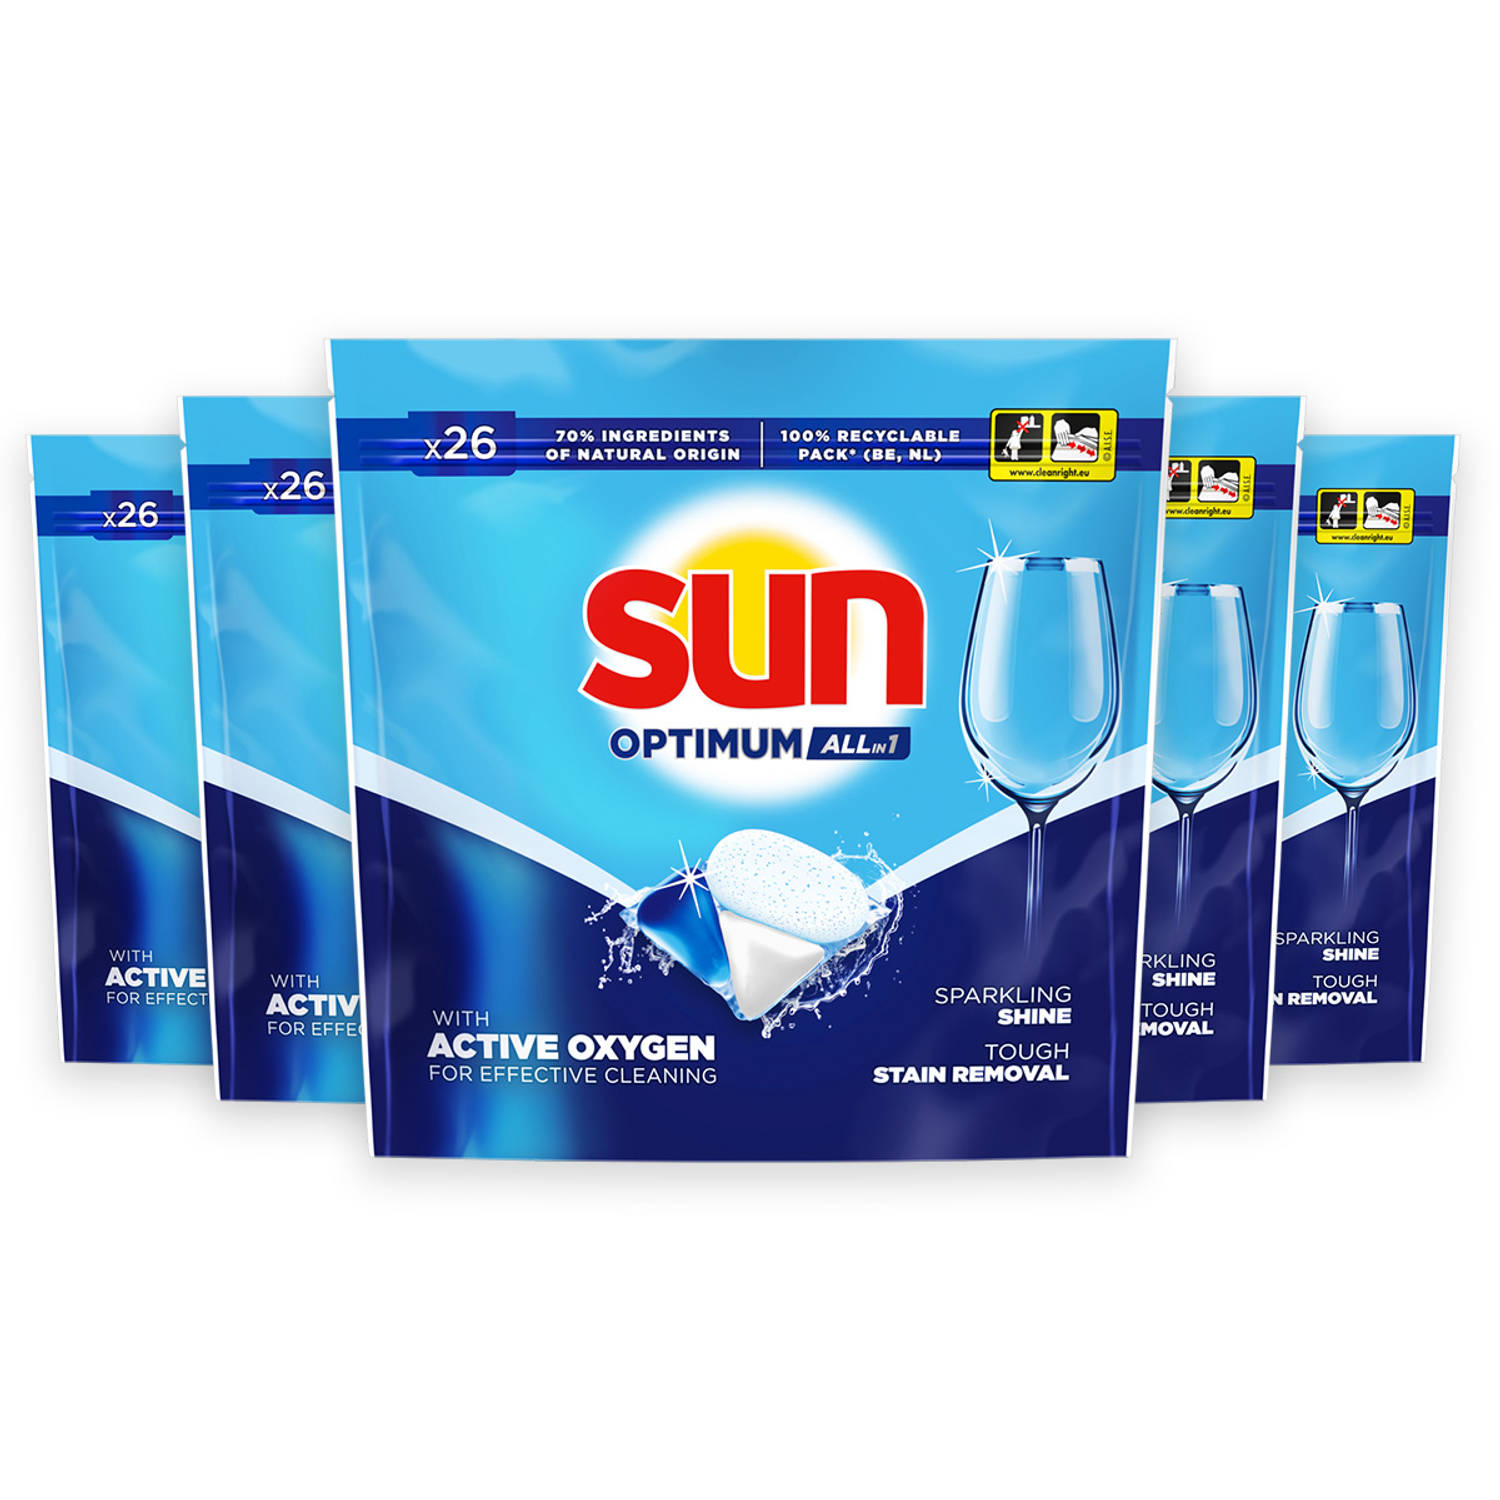 Sun Optimum Regular - Vaatwascapsules - Voordeelverpakking - 3 x 26 stuks